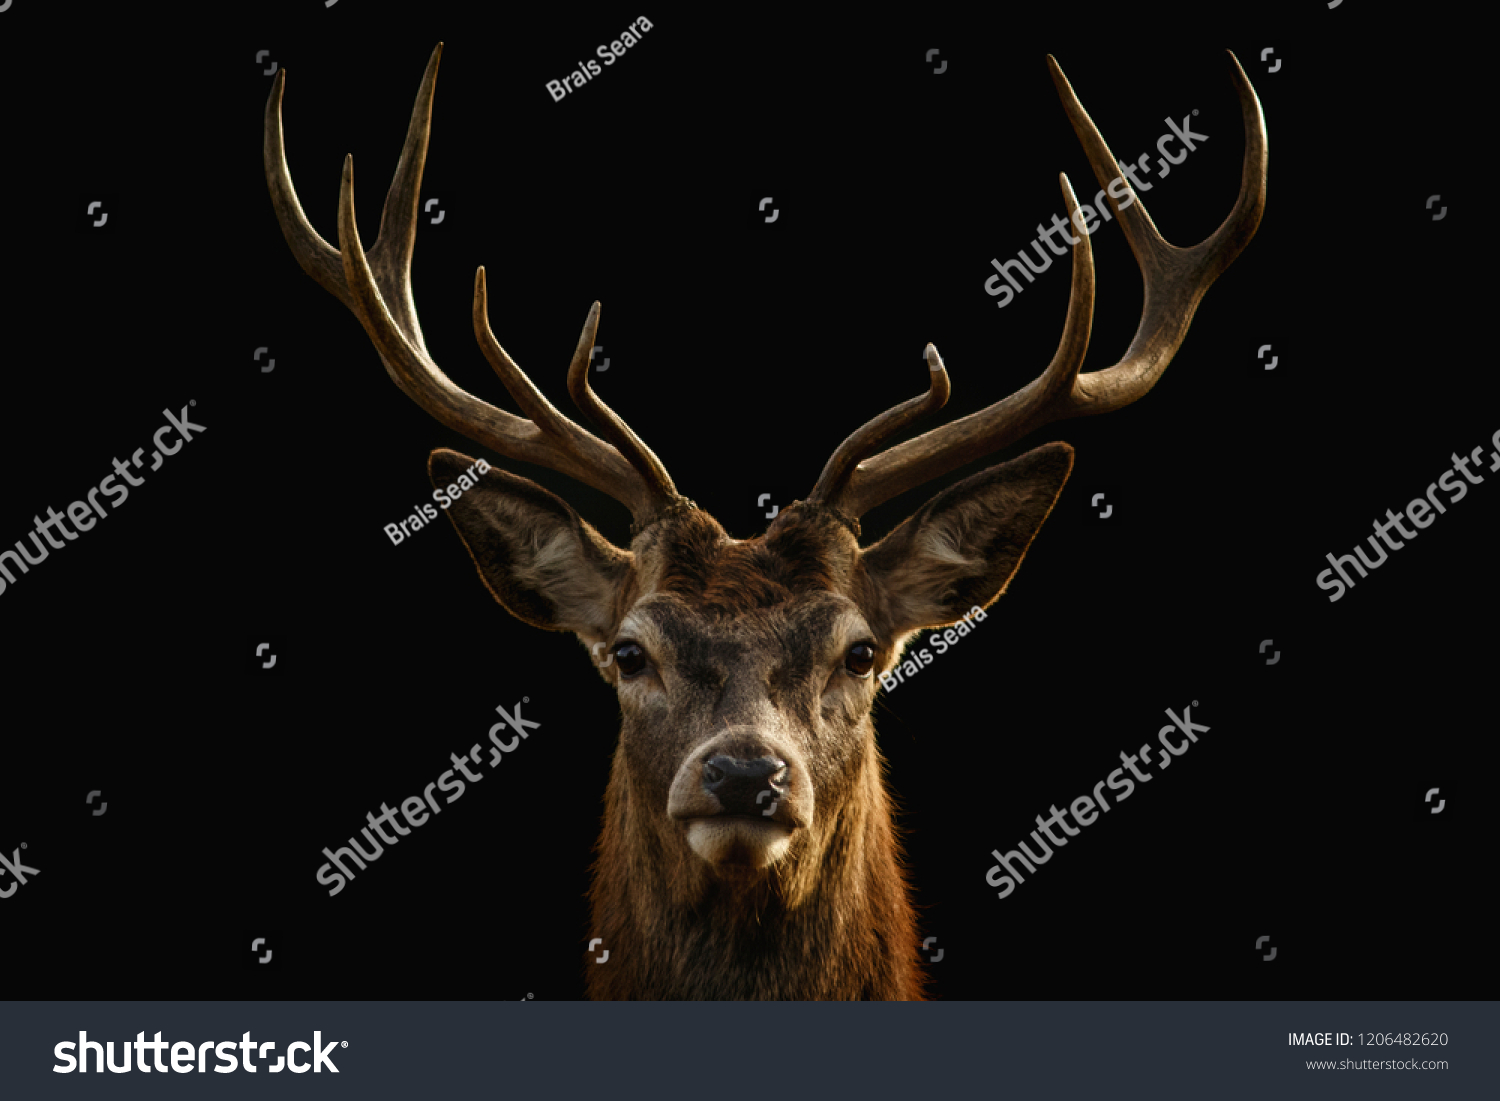 Red deer portrait on black background. #1206482620